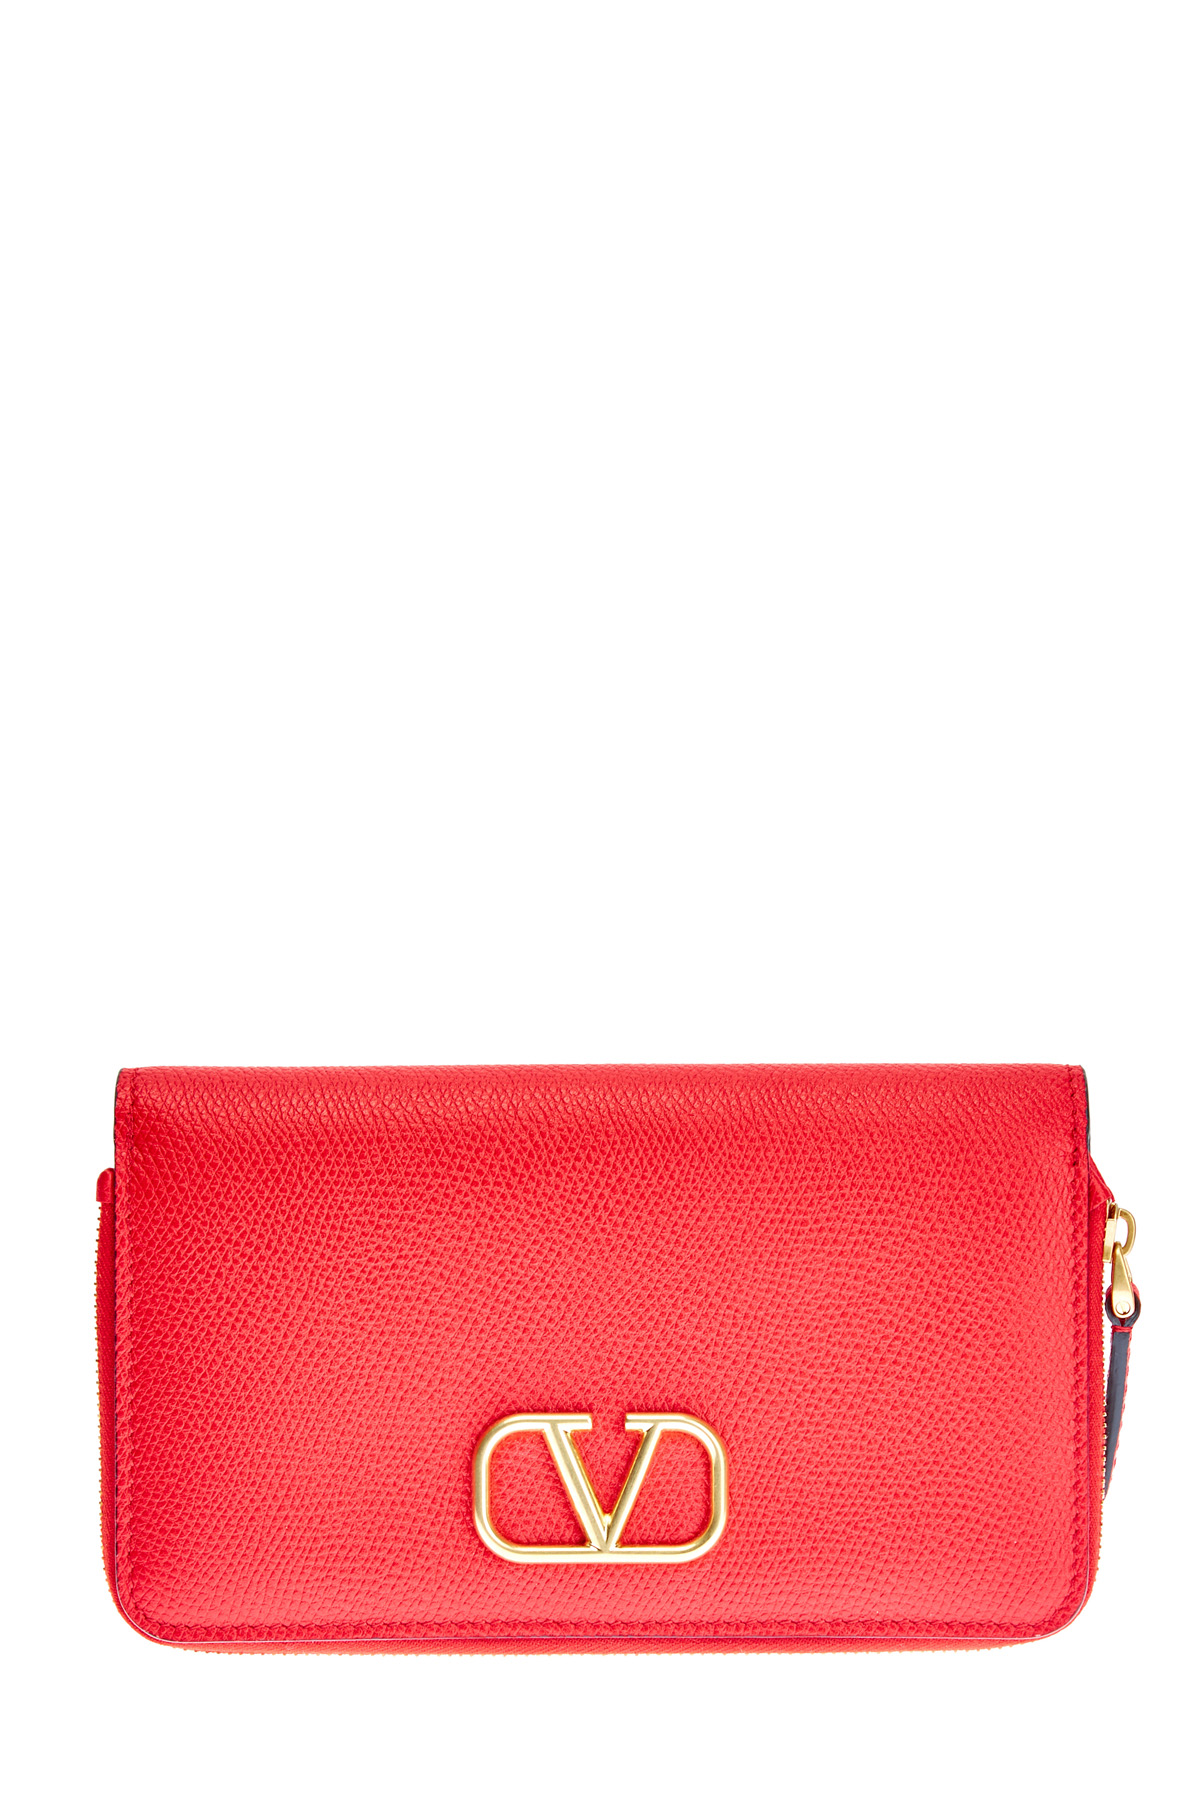 Фактурный кожаный кошелек с макро-логотипом VLOGO VALENTINO GARAVANI, цвет красный, размер S;M;L;XL;2XL